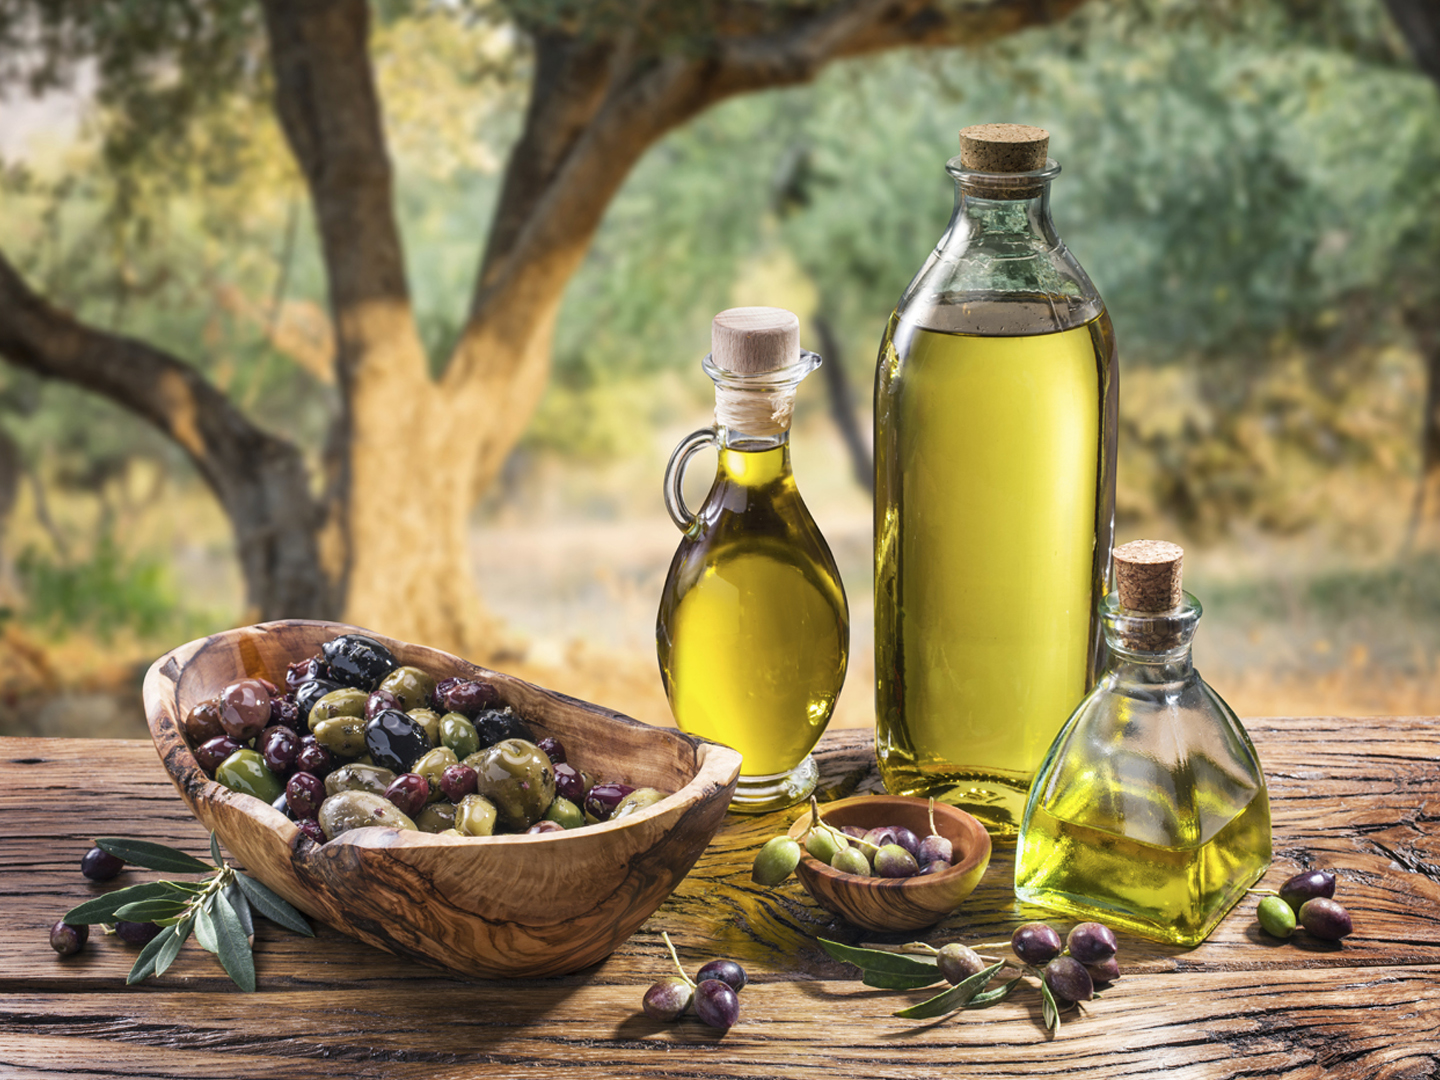 Caduca el aceite de oliva